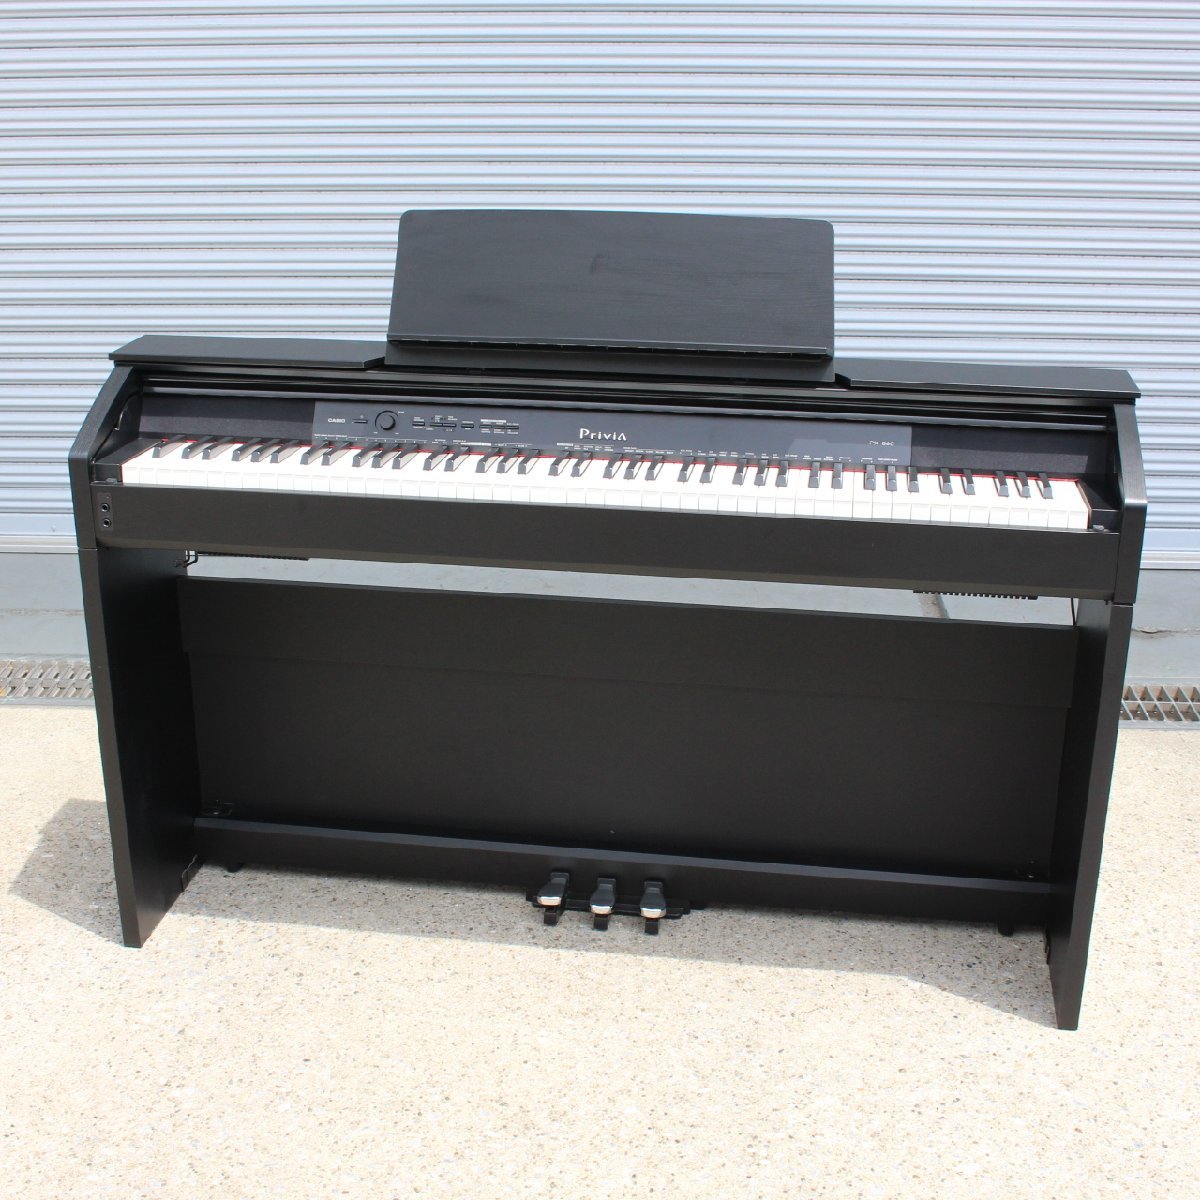 川崎市麻生区にて カシオ 電子ピアノ　プリヴィア PX-860BK 2015年製 を出張買取させて頂きました。